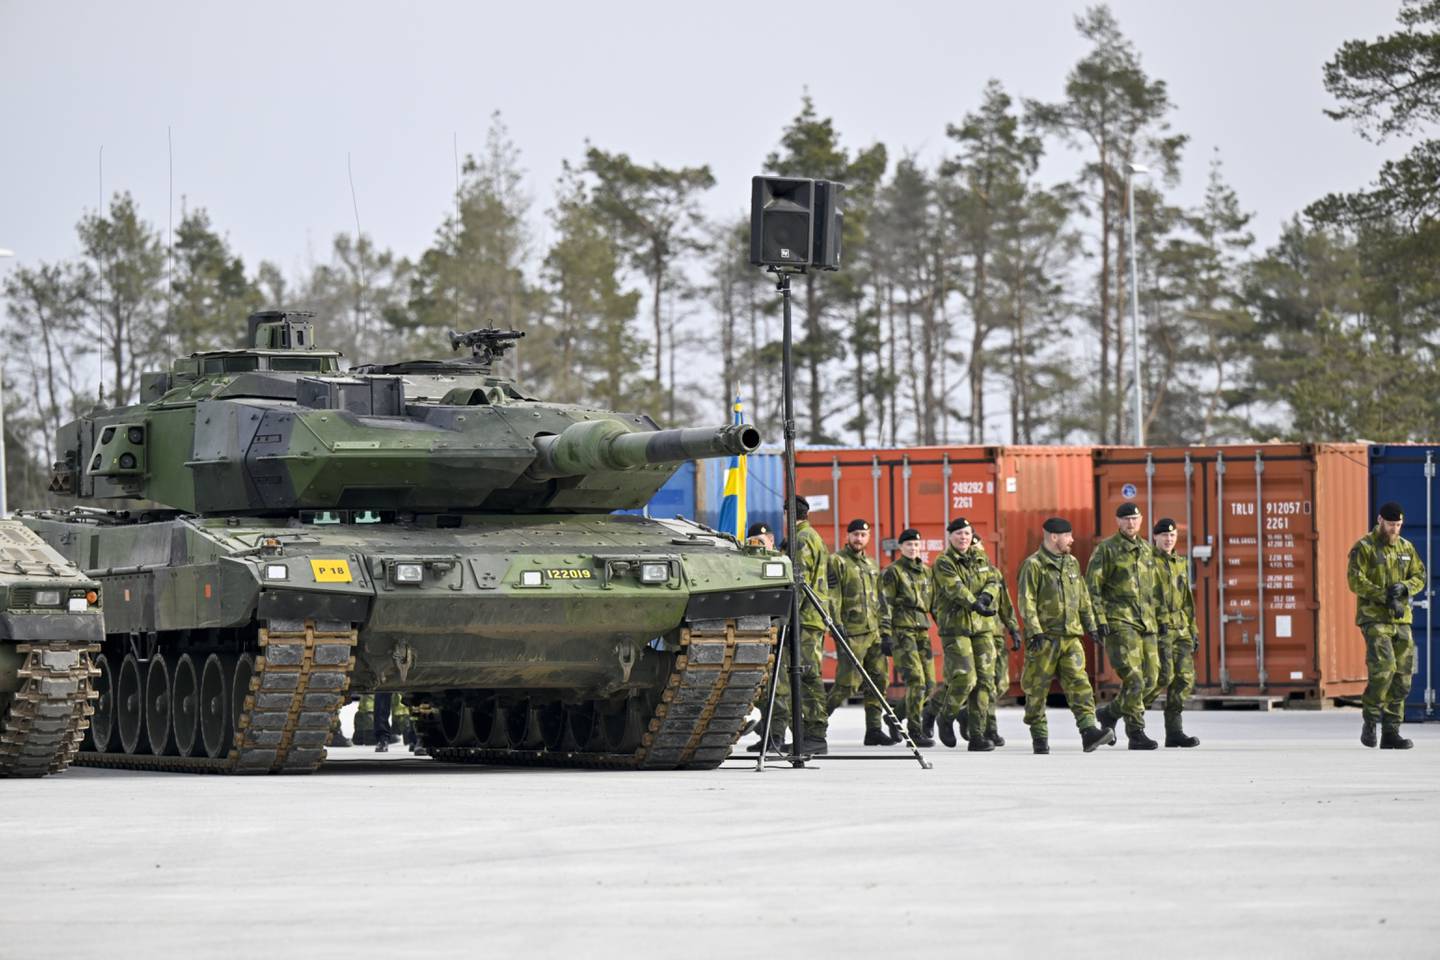 Imagen de tropas suecas